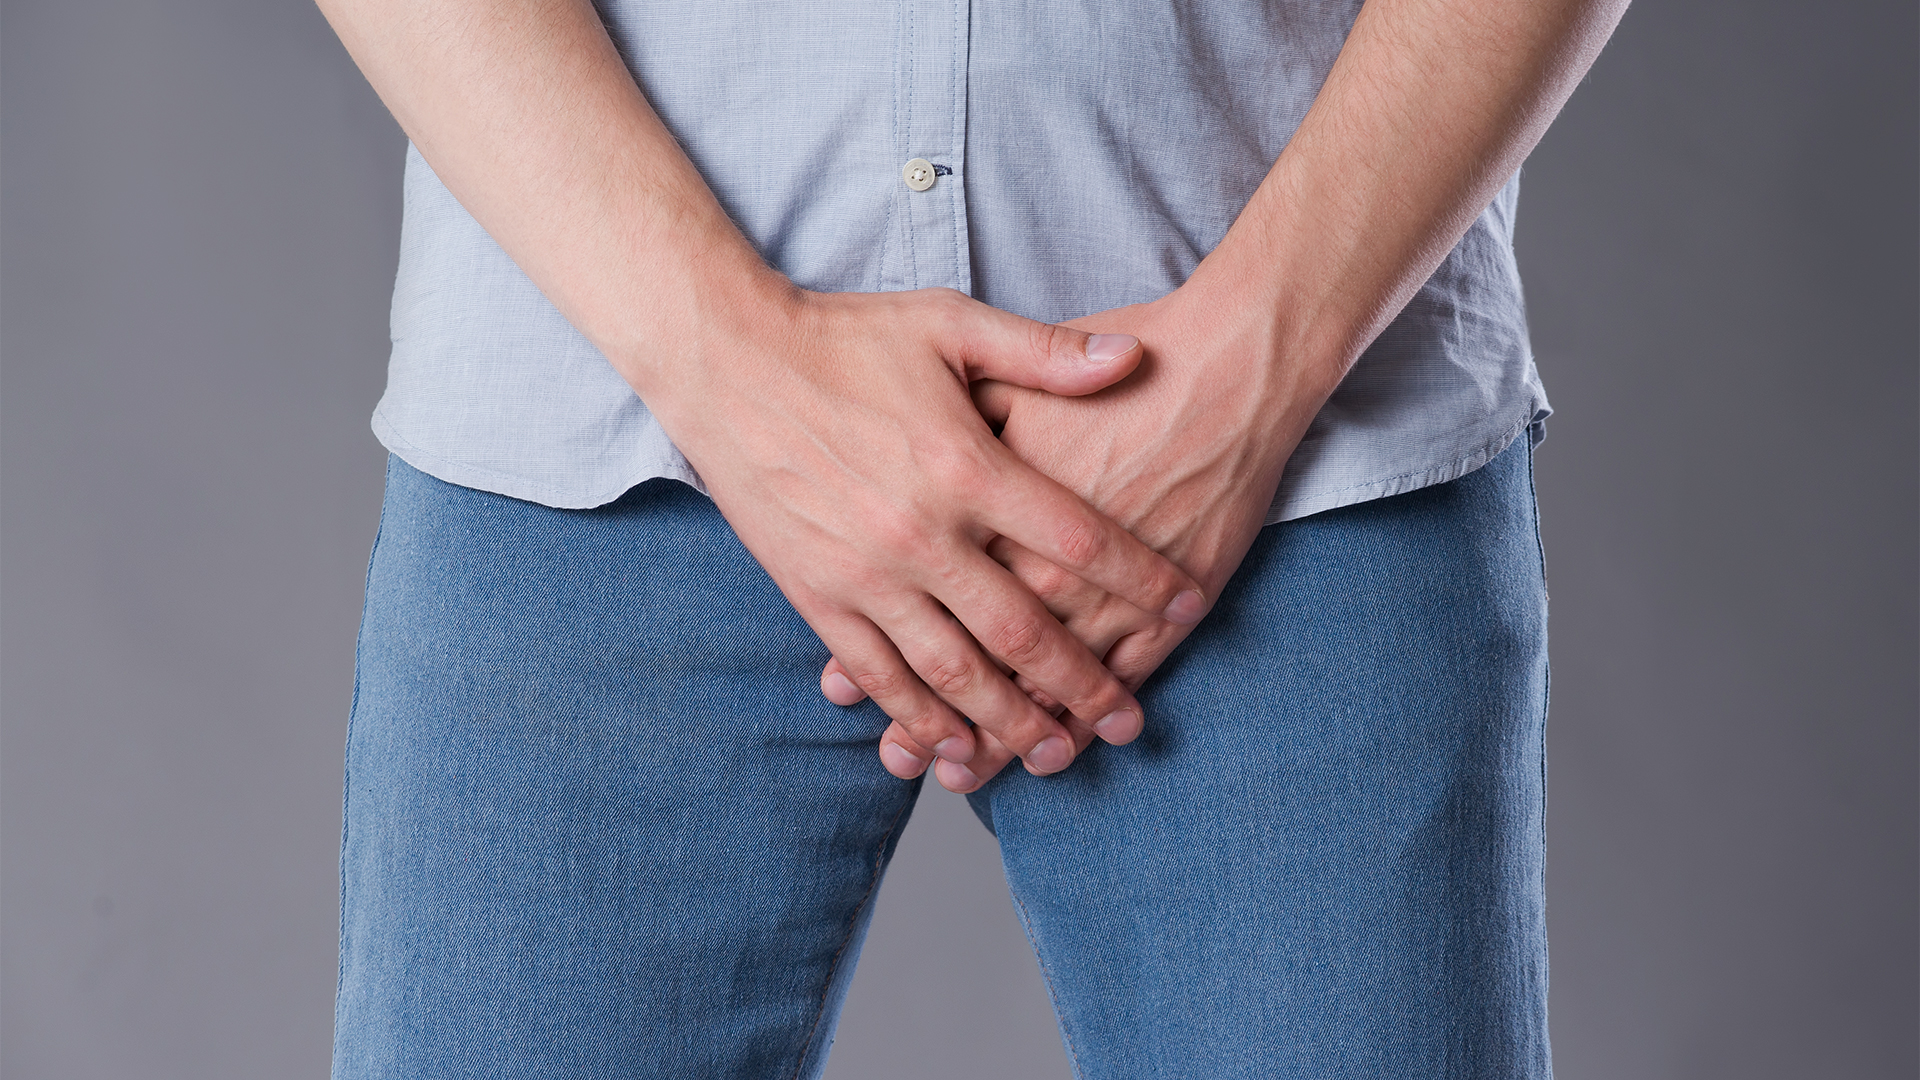 Sintomas do câncer de próstata: como identificar a doença precocemente?